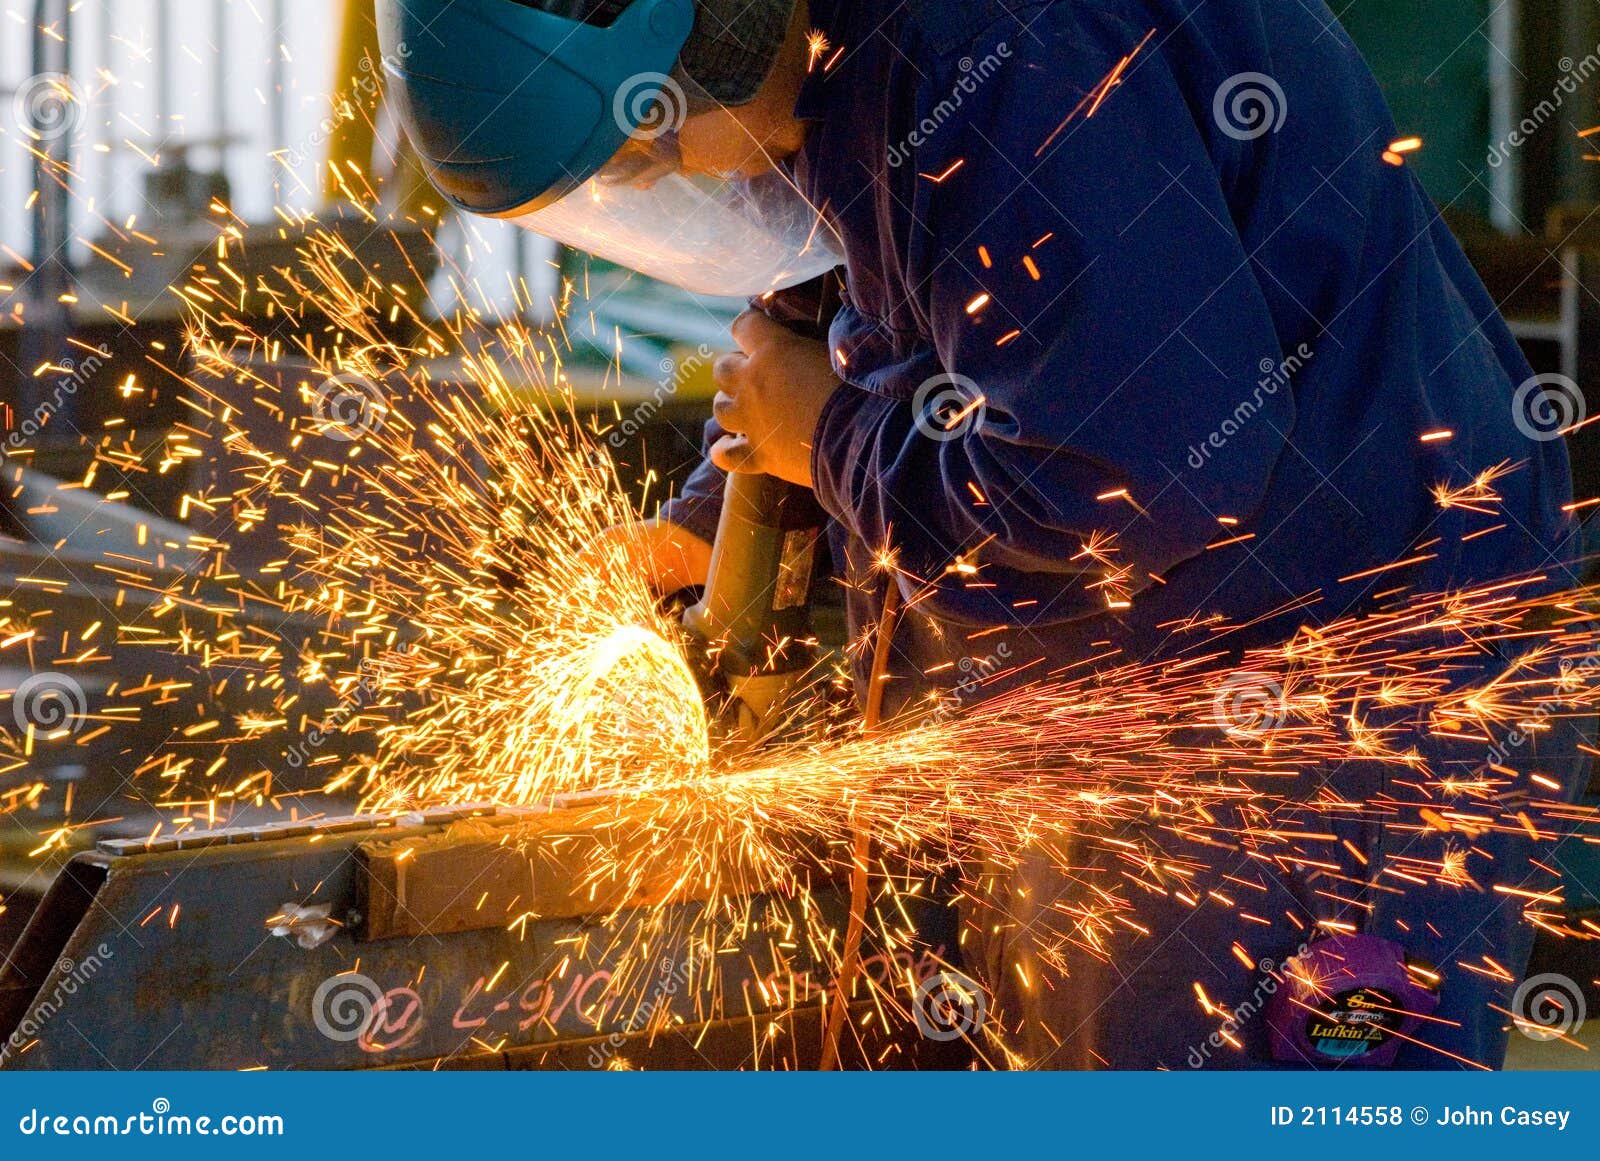 men at work grinding steel